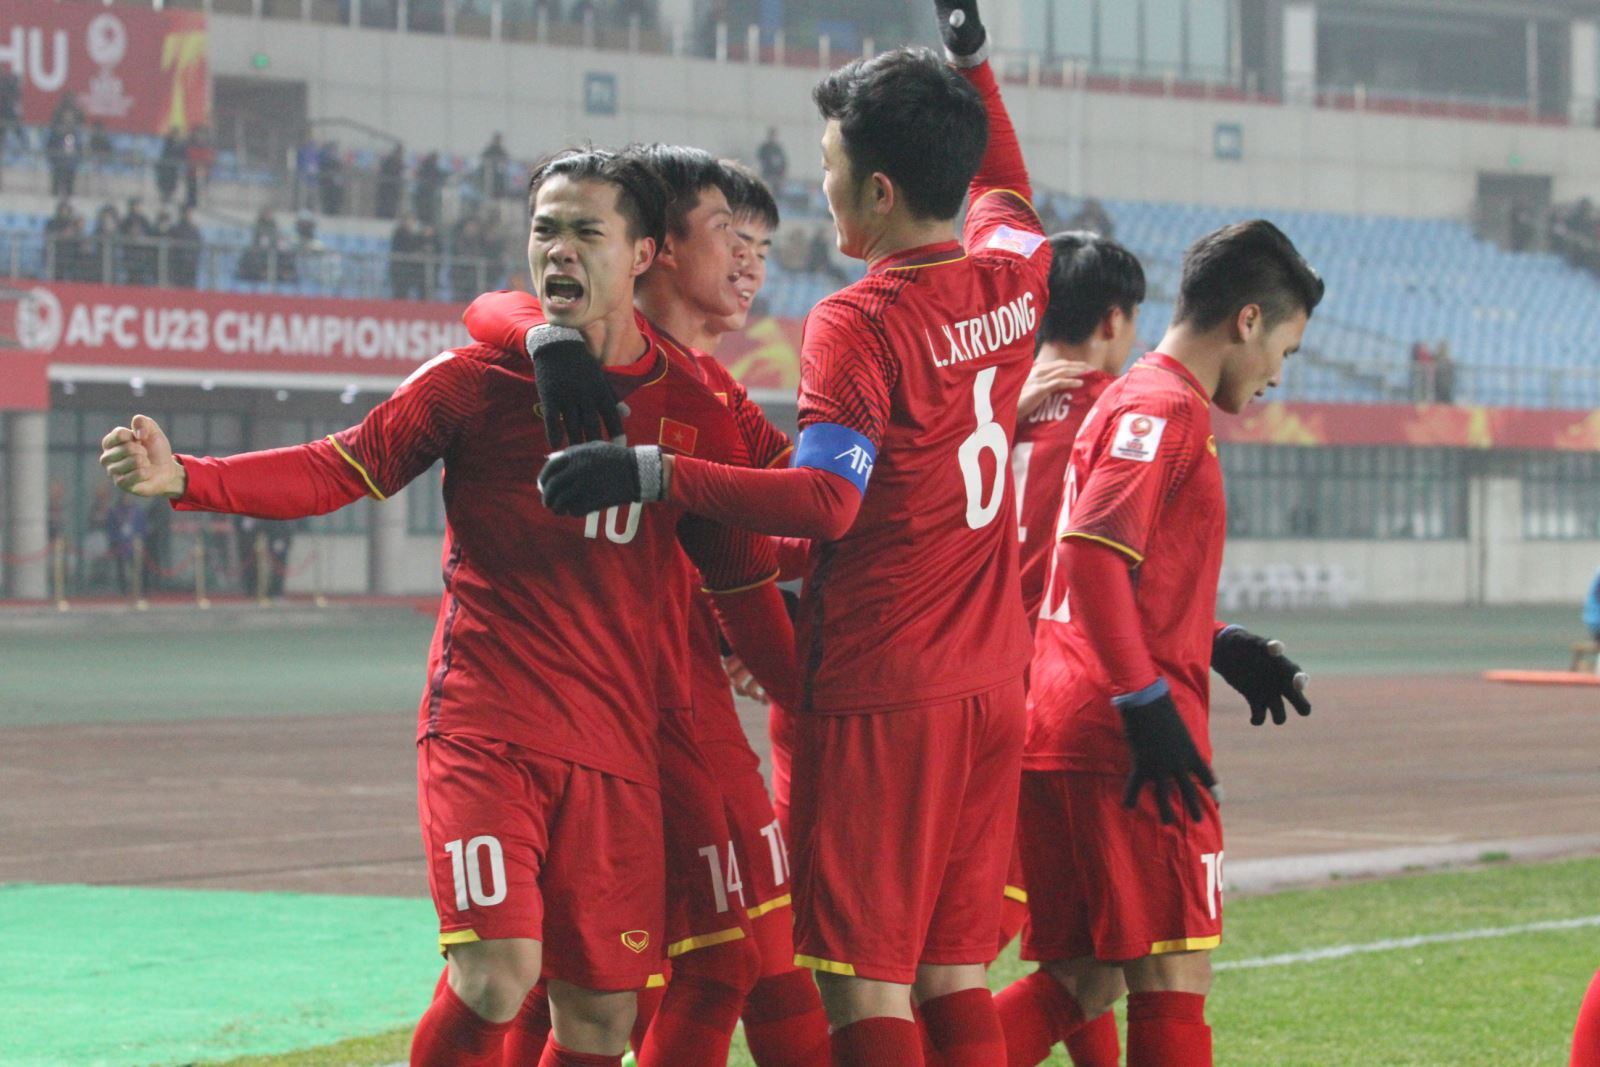 Hãy gửi lời ngợi khen đến HLV Park Hang Seo và các cầu thủ U23 Việt Nam